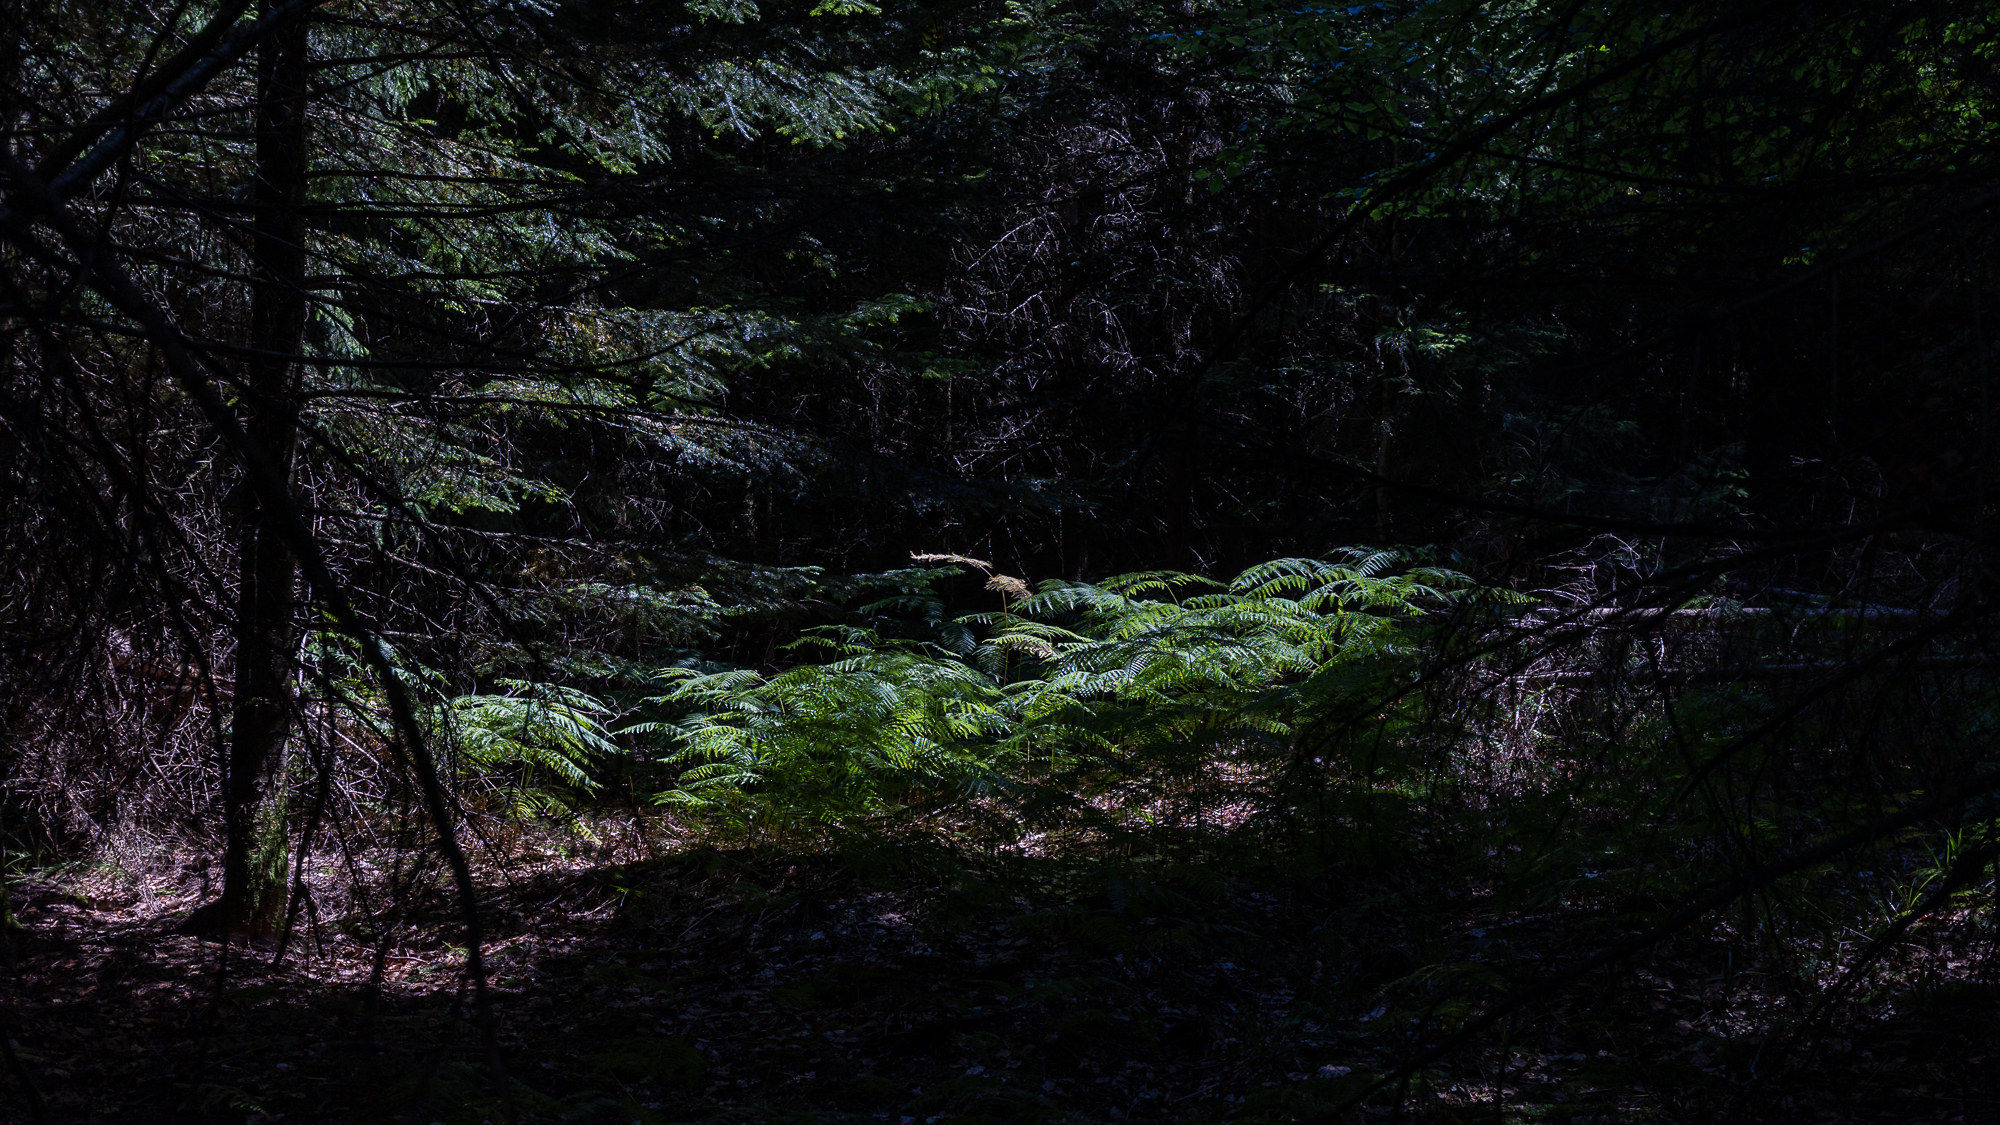 Das Bild zeigt einen Einblick in einen dichten Nadelwald. Auf einen Flecken Waldboden fällt Sonnenlicht - hier wachsen grüne Pflanzen wie Farn und junge NAdelbäume heran. 